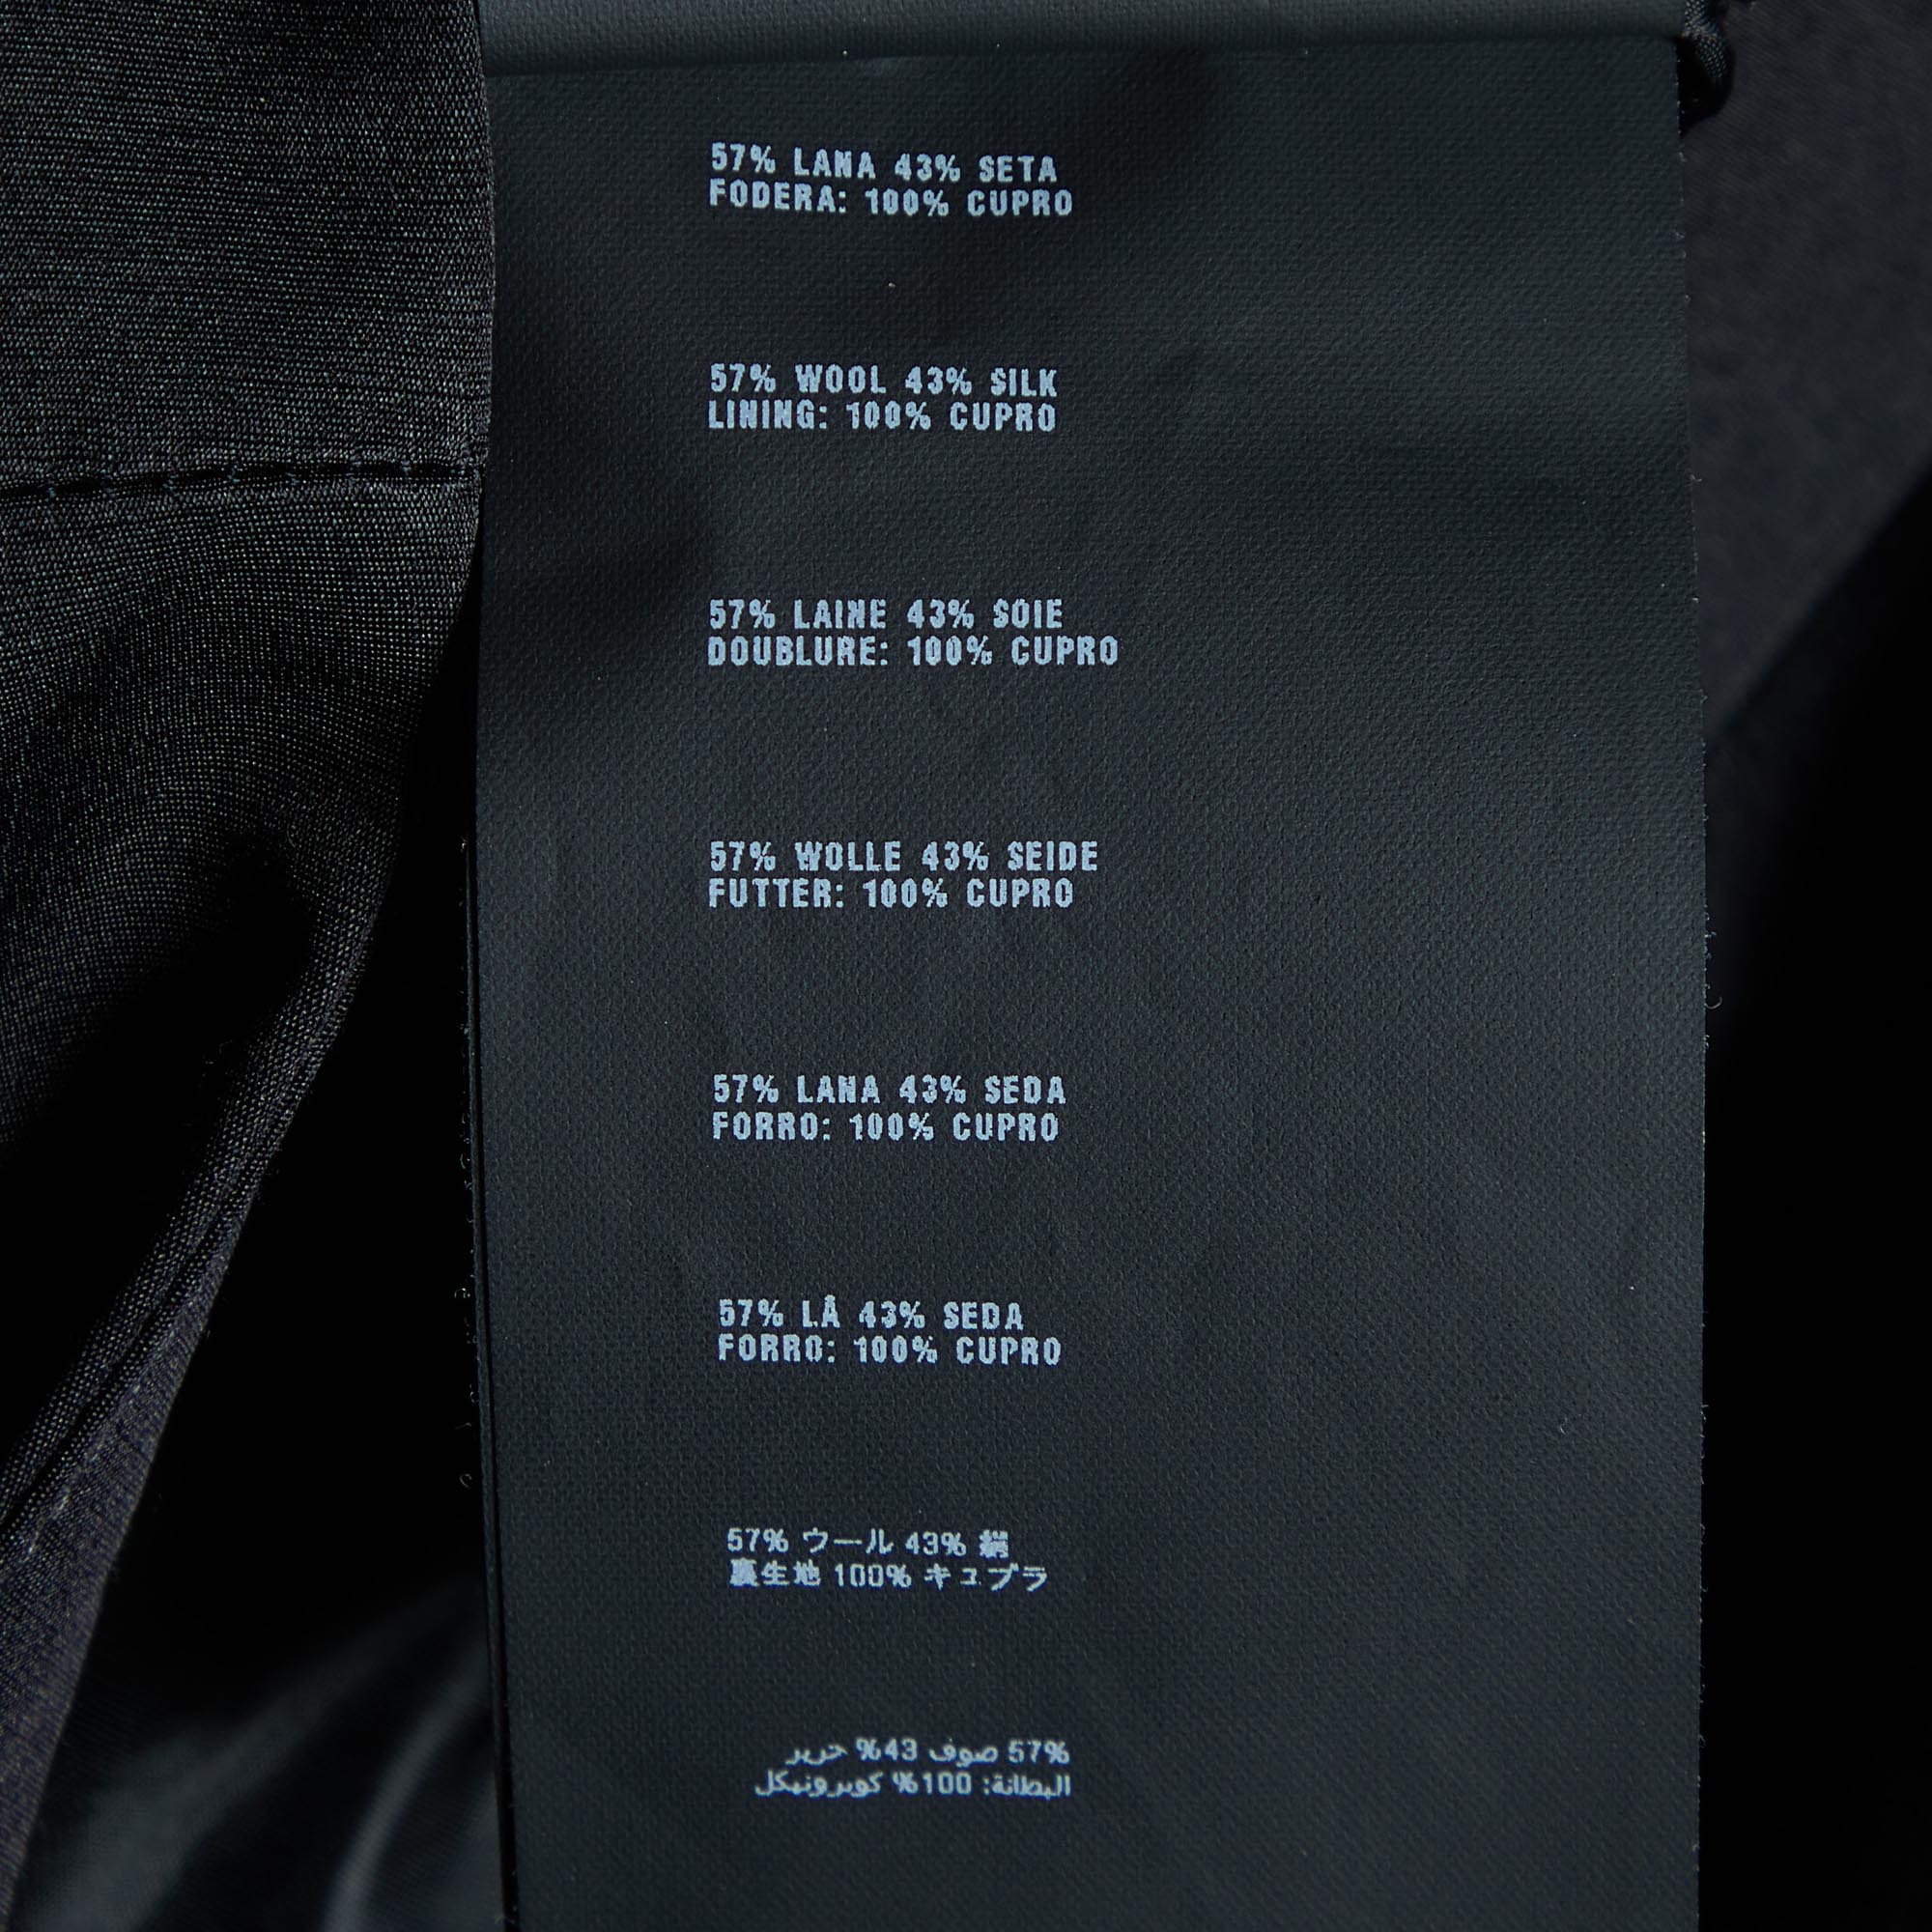 Prada Black Wool & Silk Contrast Detail Pants M